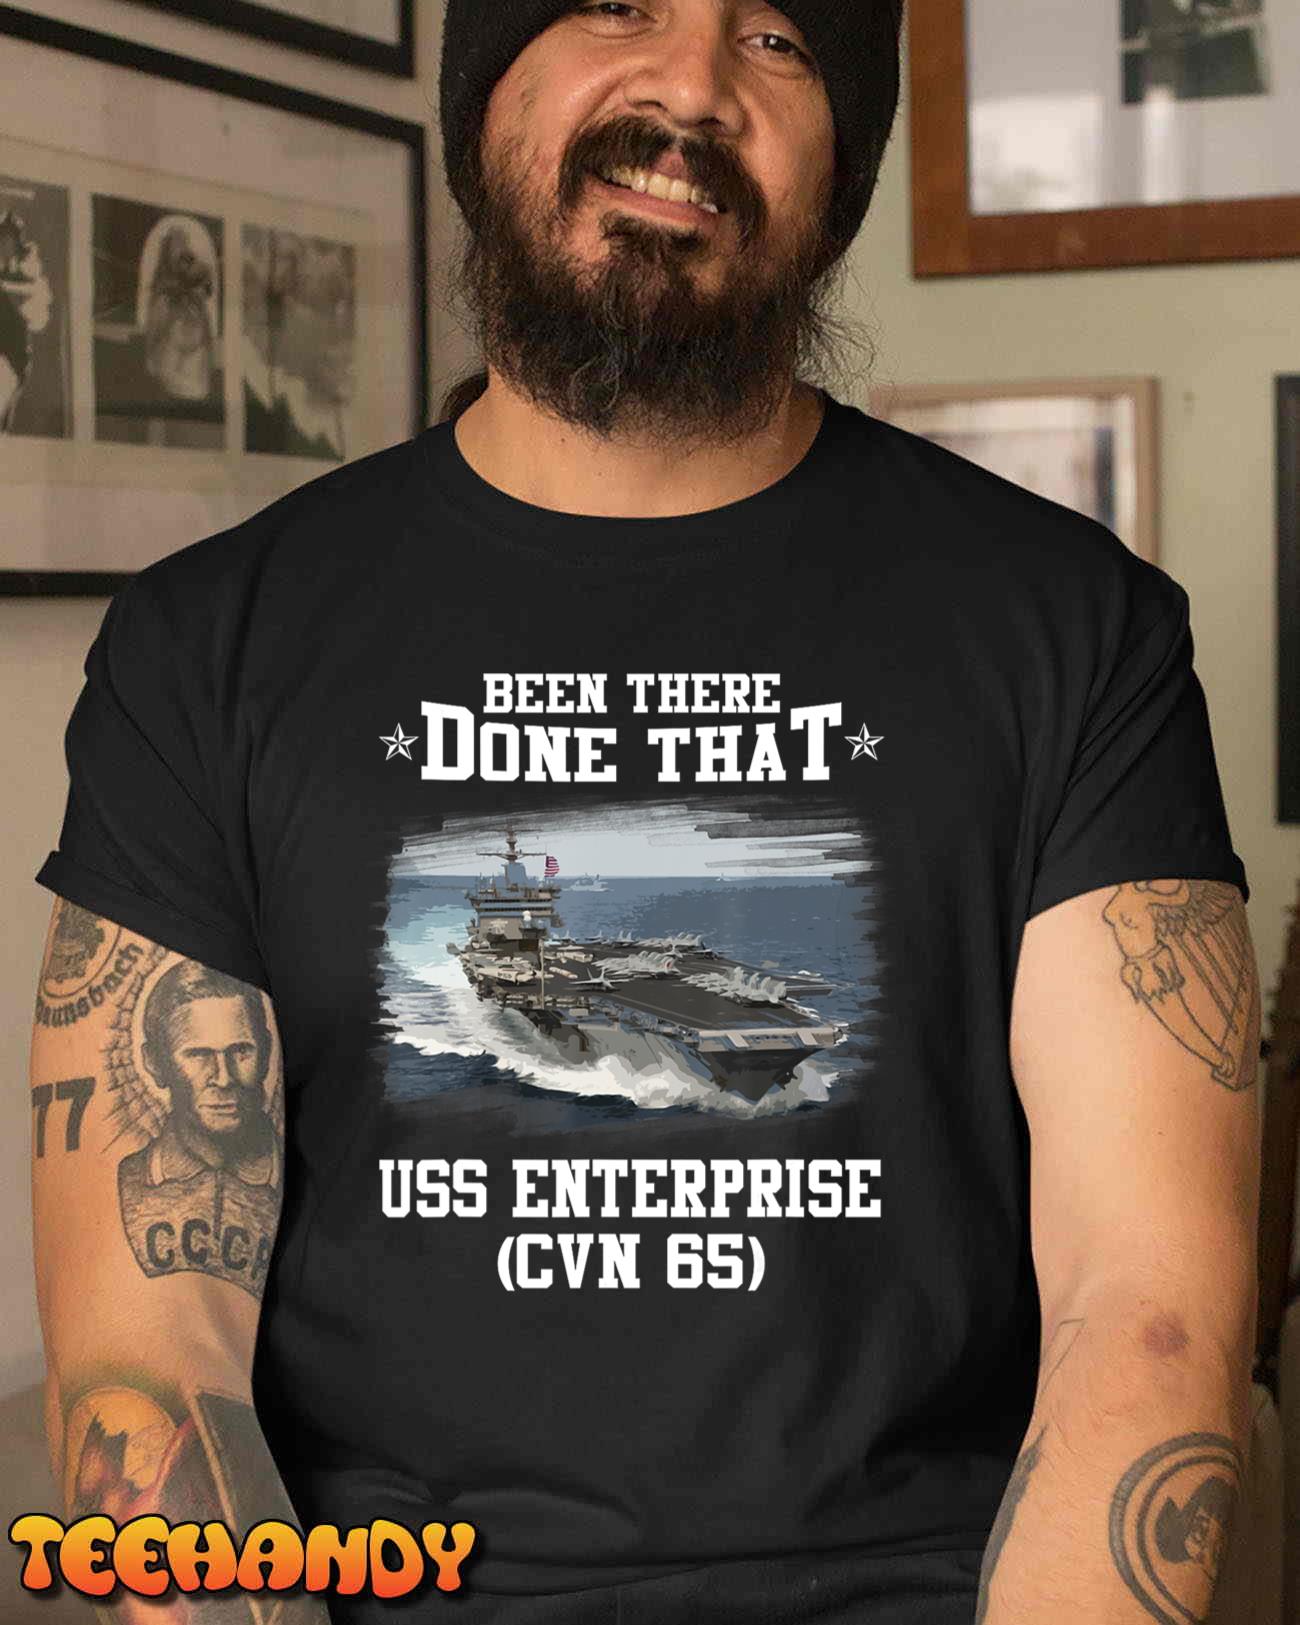 USS Enterprise CVN-65 Veterans Day Father Day Gift T-Shirt